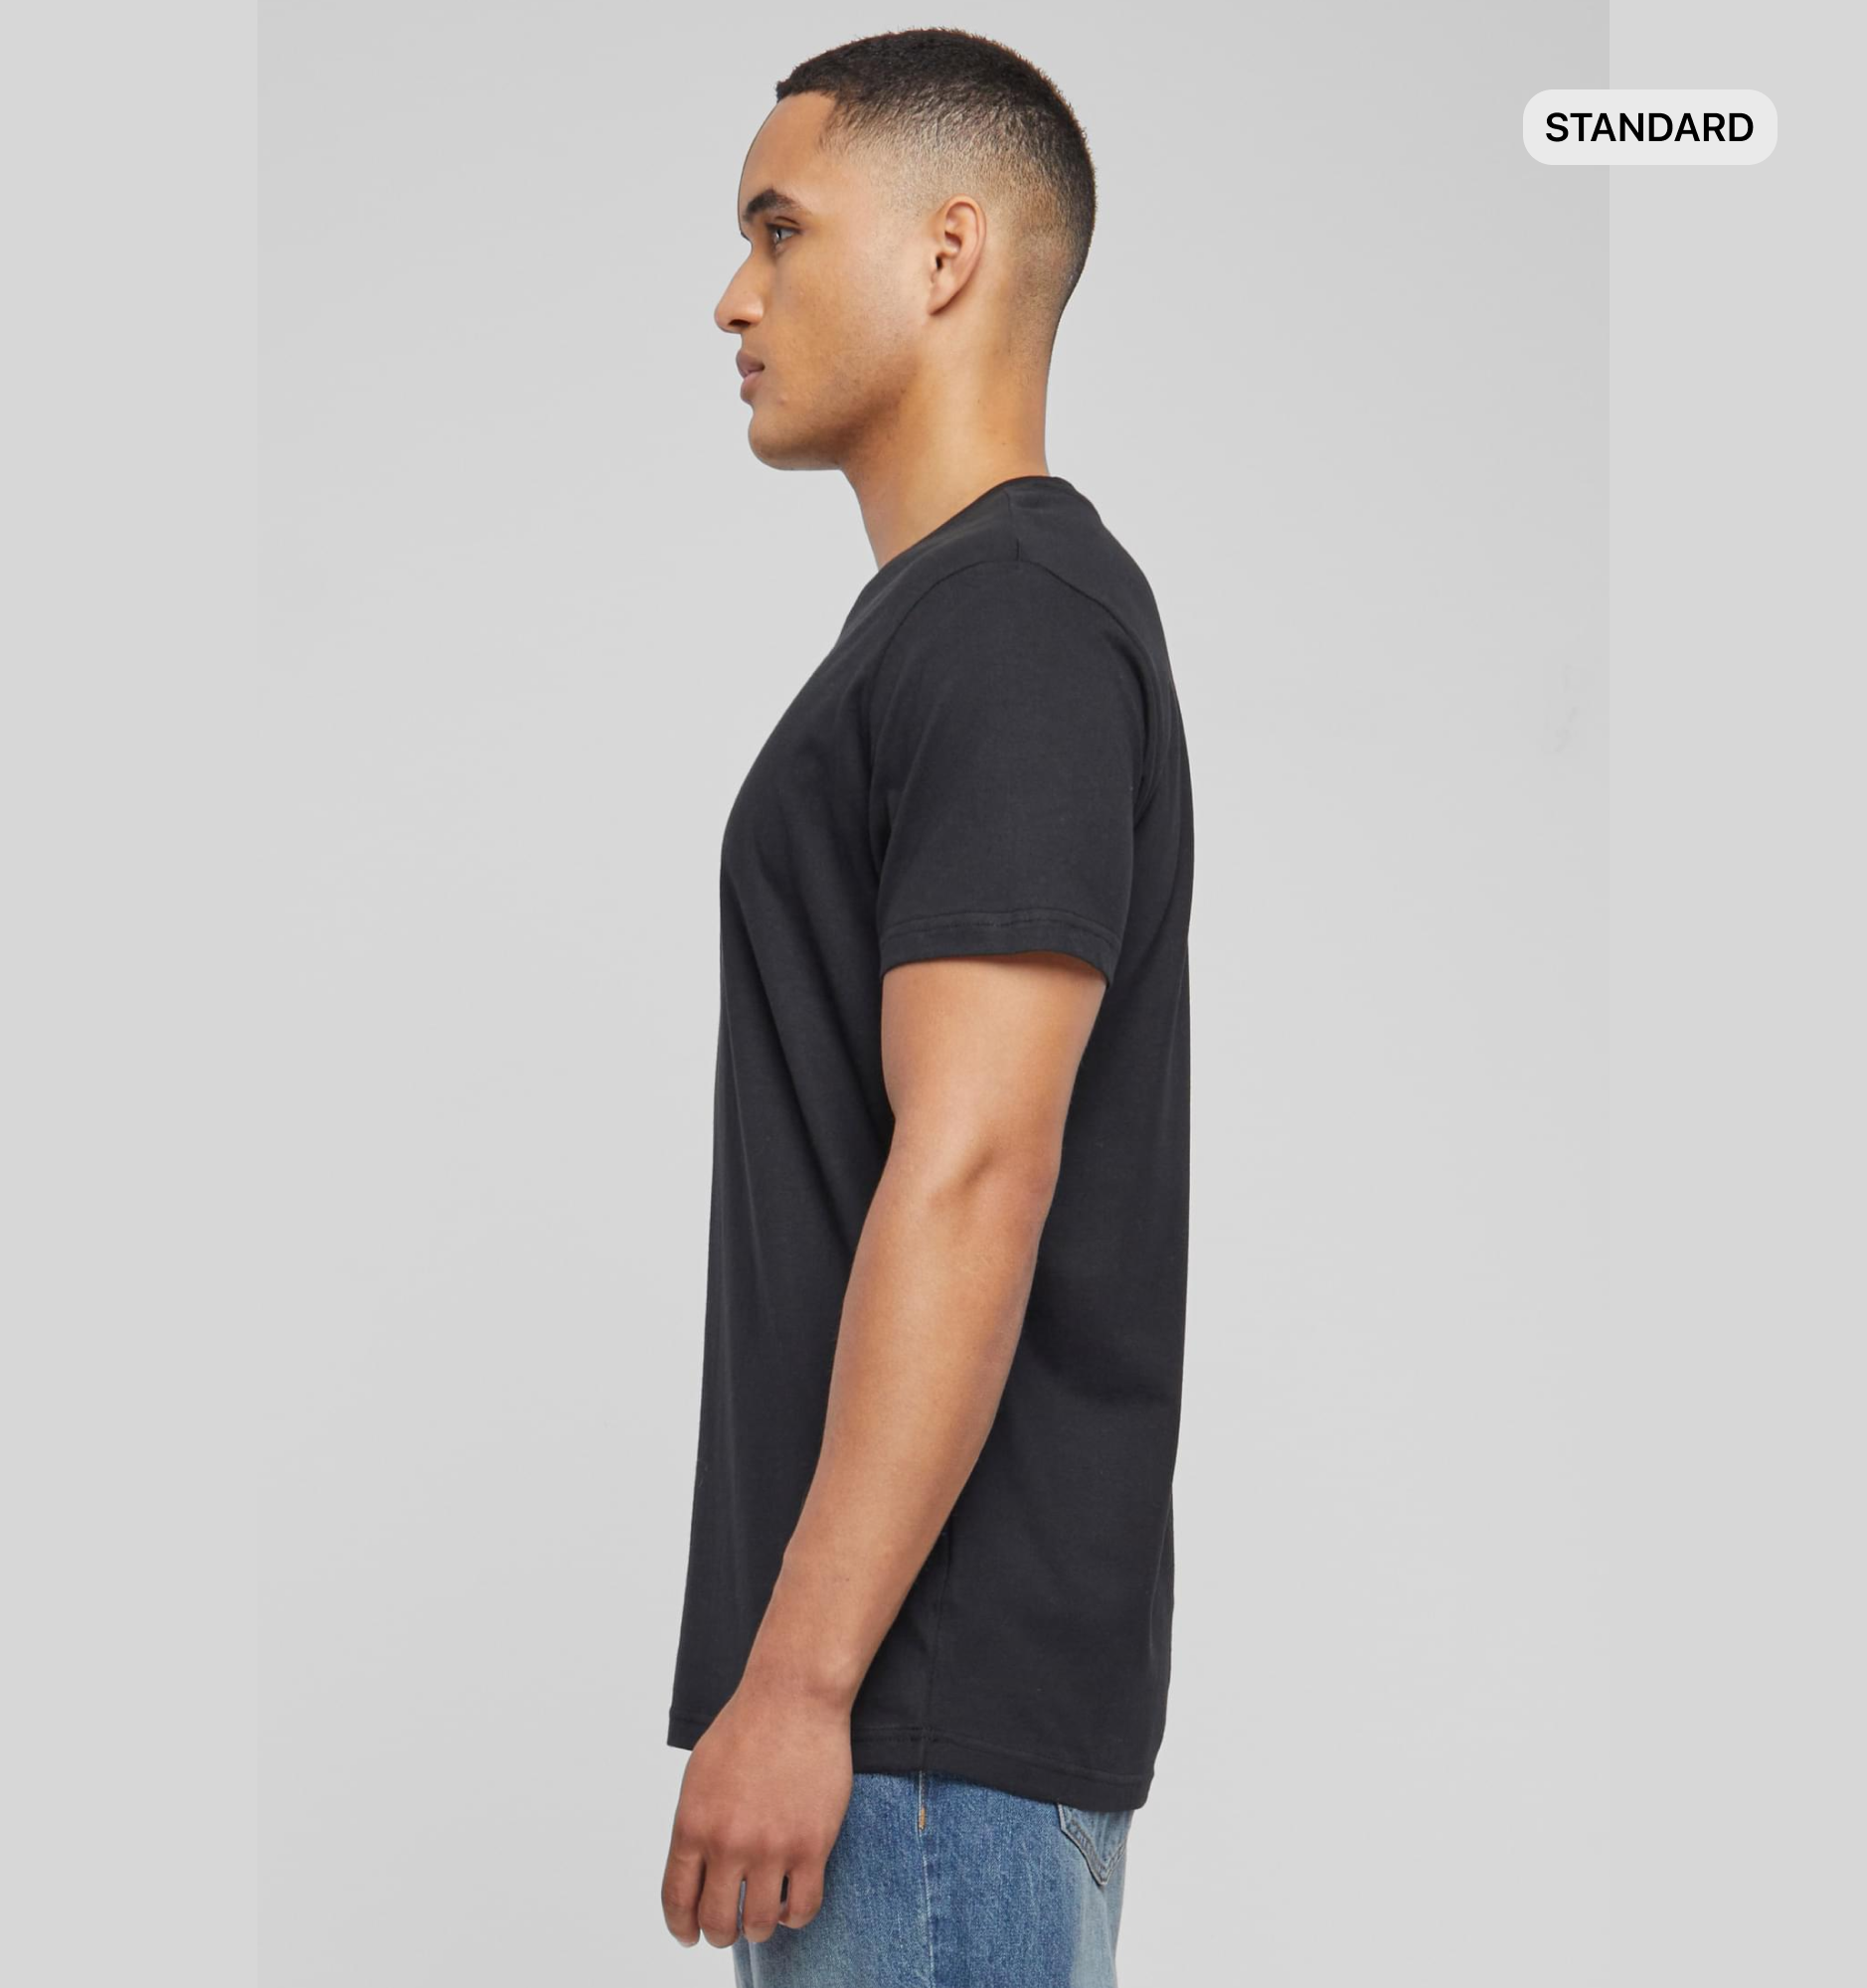 T-shirt/Standard (Round Neck)